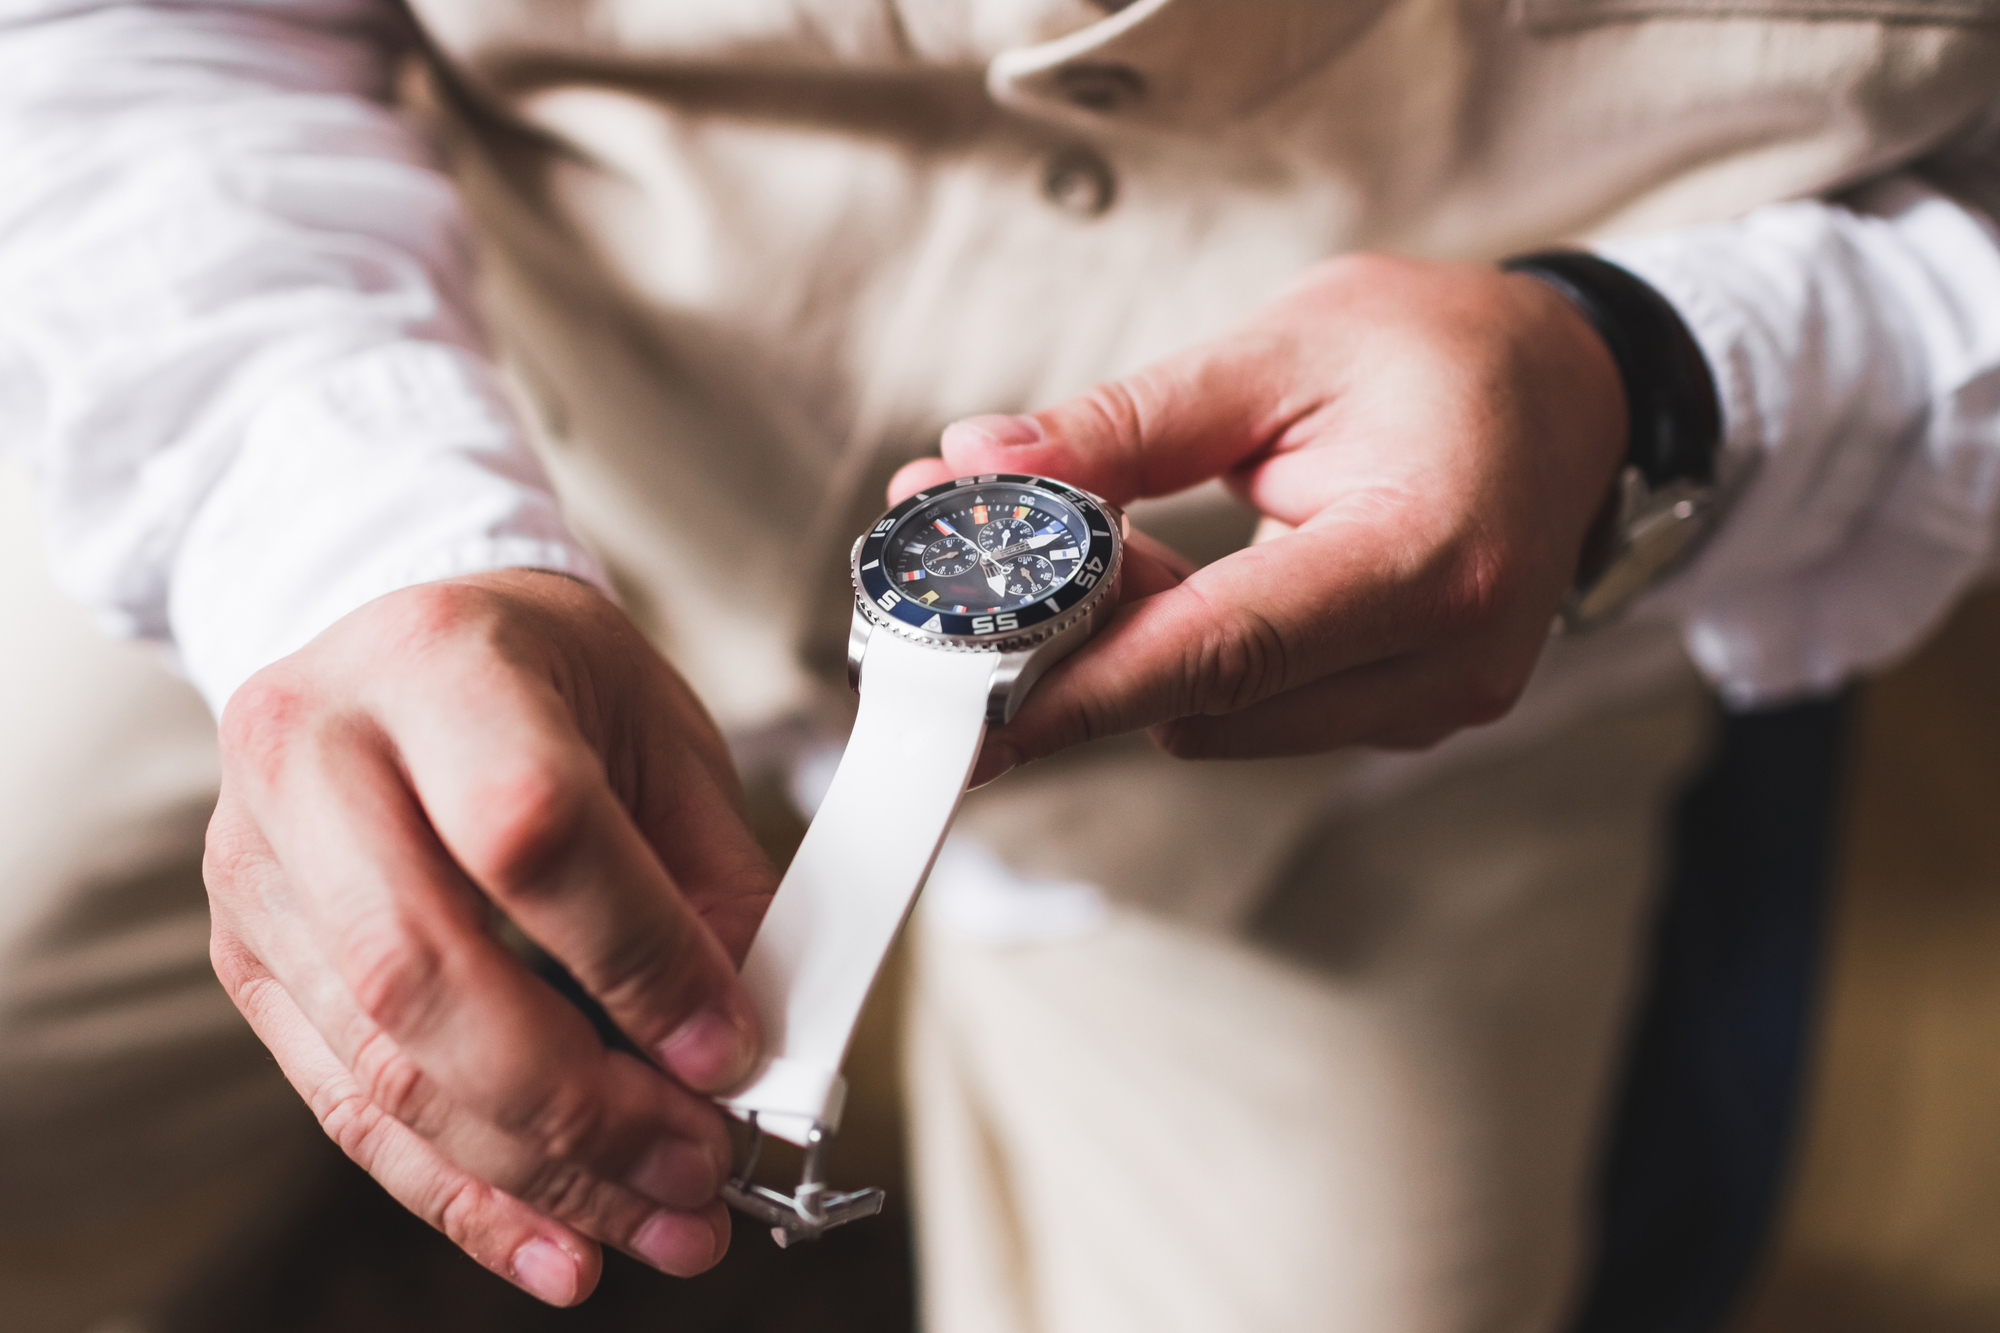 Henrik Ørsnes sælger ure og smykker både nettet og i butikker - Businessguide